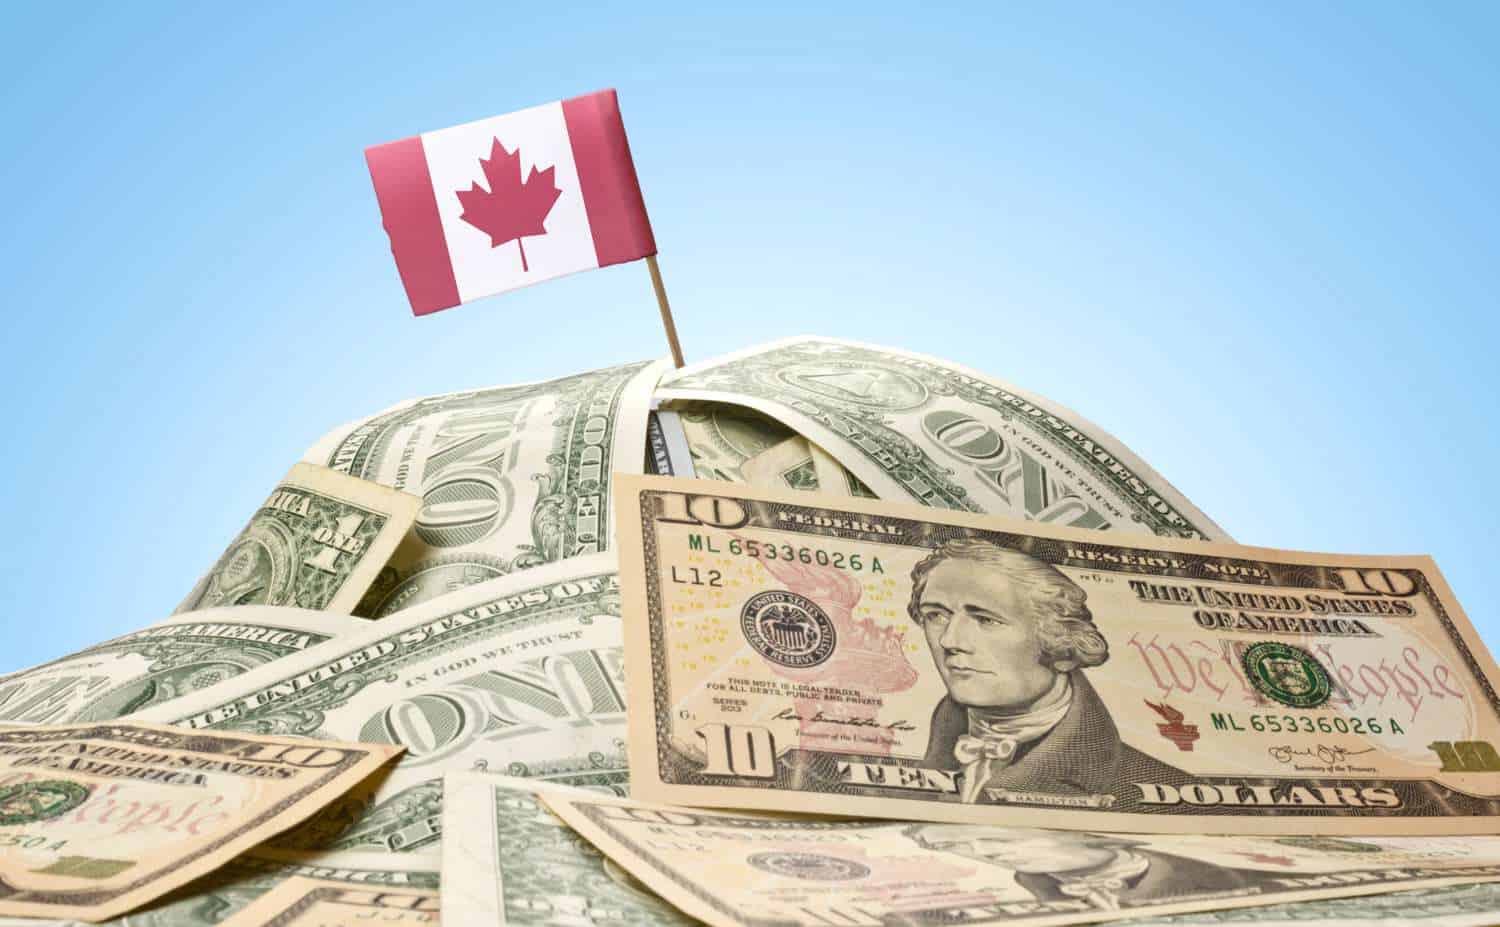 Canadian Dollar Symbol Vs US Dollar Symbol